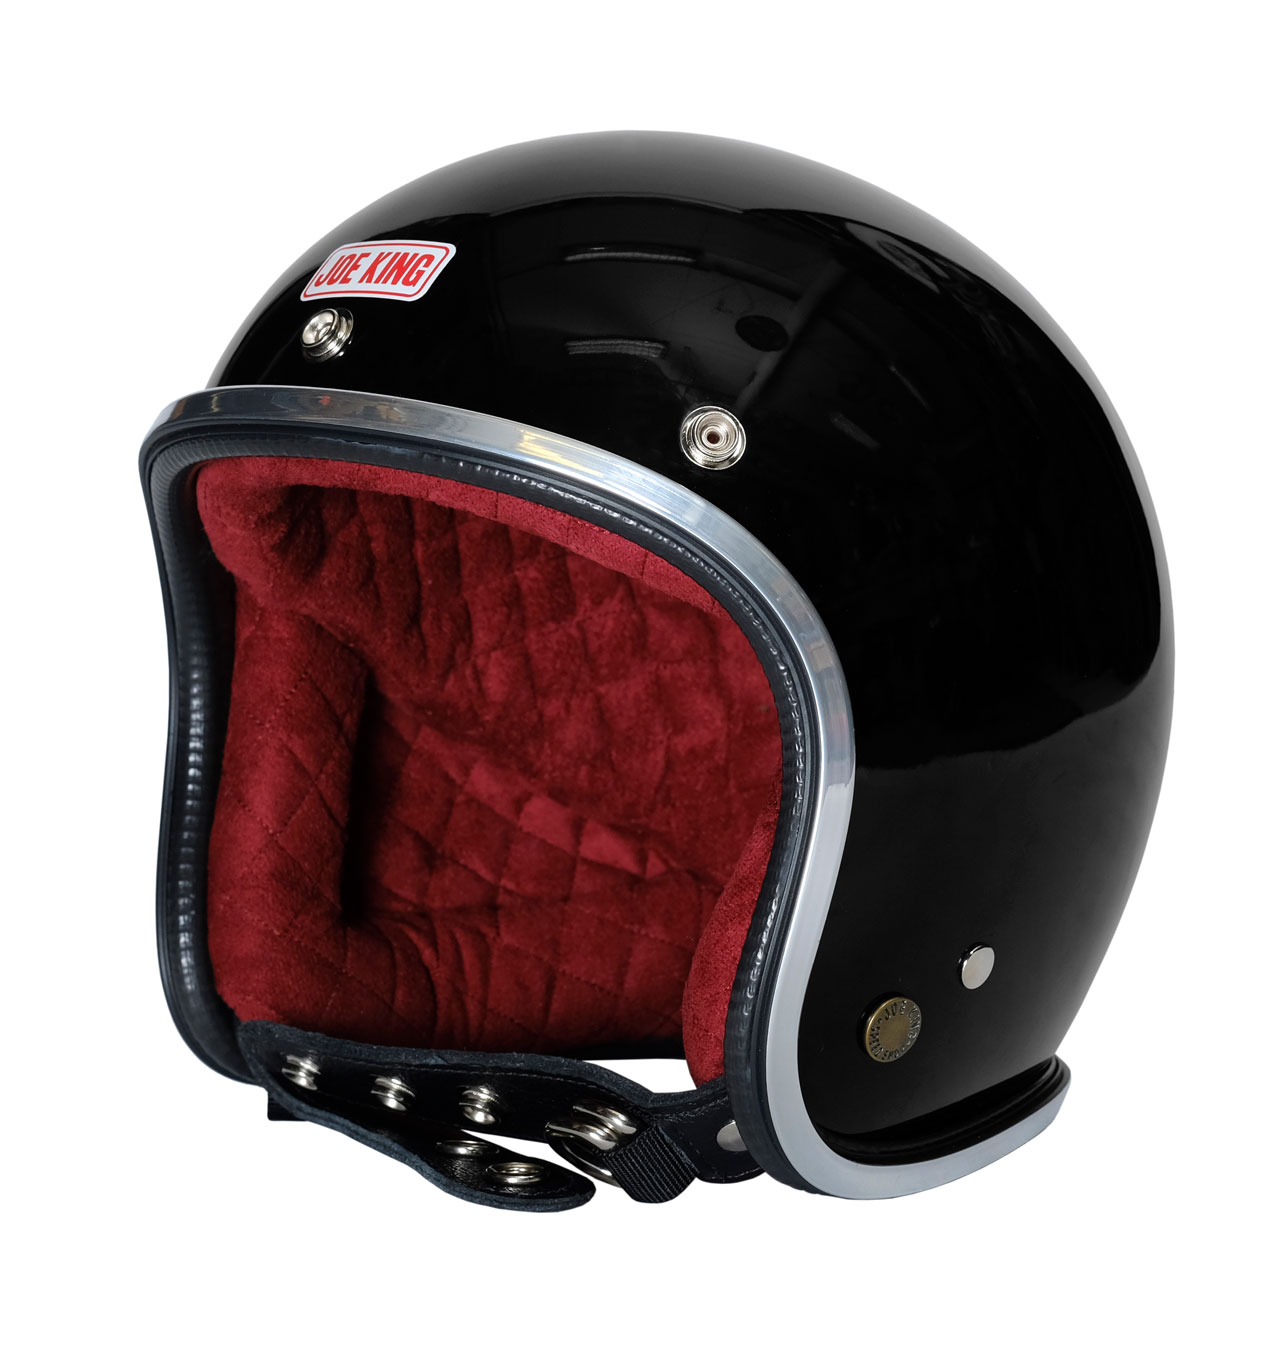 Joe King - JK400 Helmet Gloss Black/Burgundy - Chrome Trim